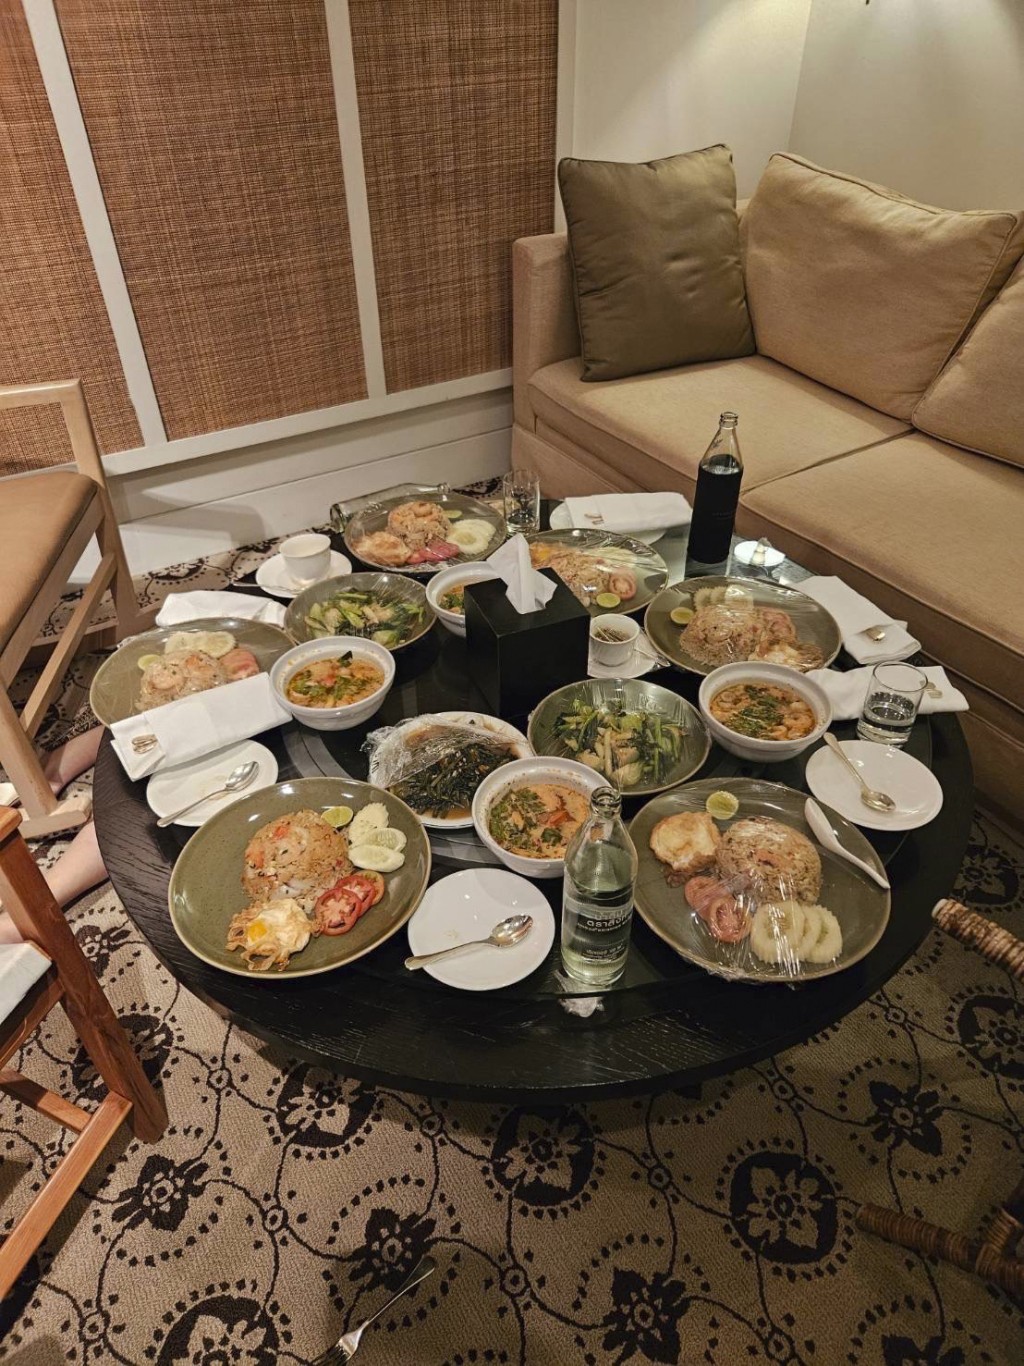 泰国警方发布酒店房内照片，可见满桌食物几乎原封未动。 美联社